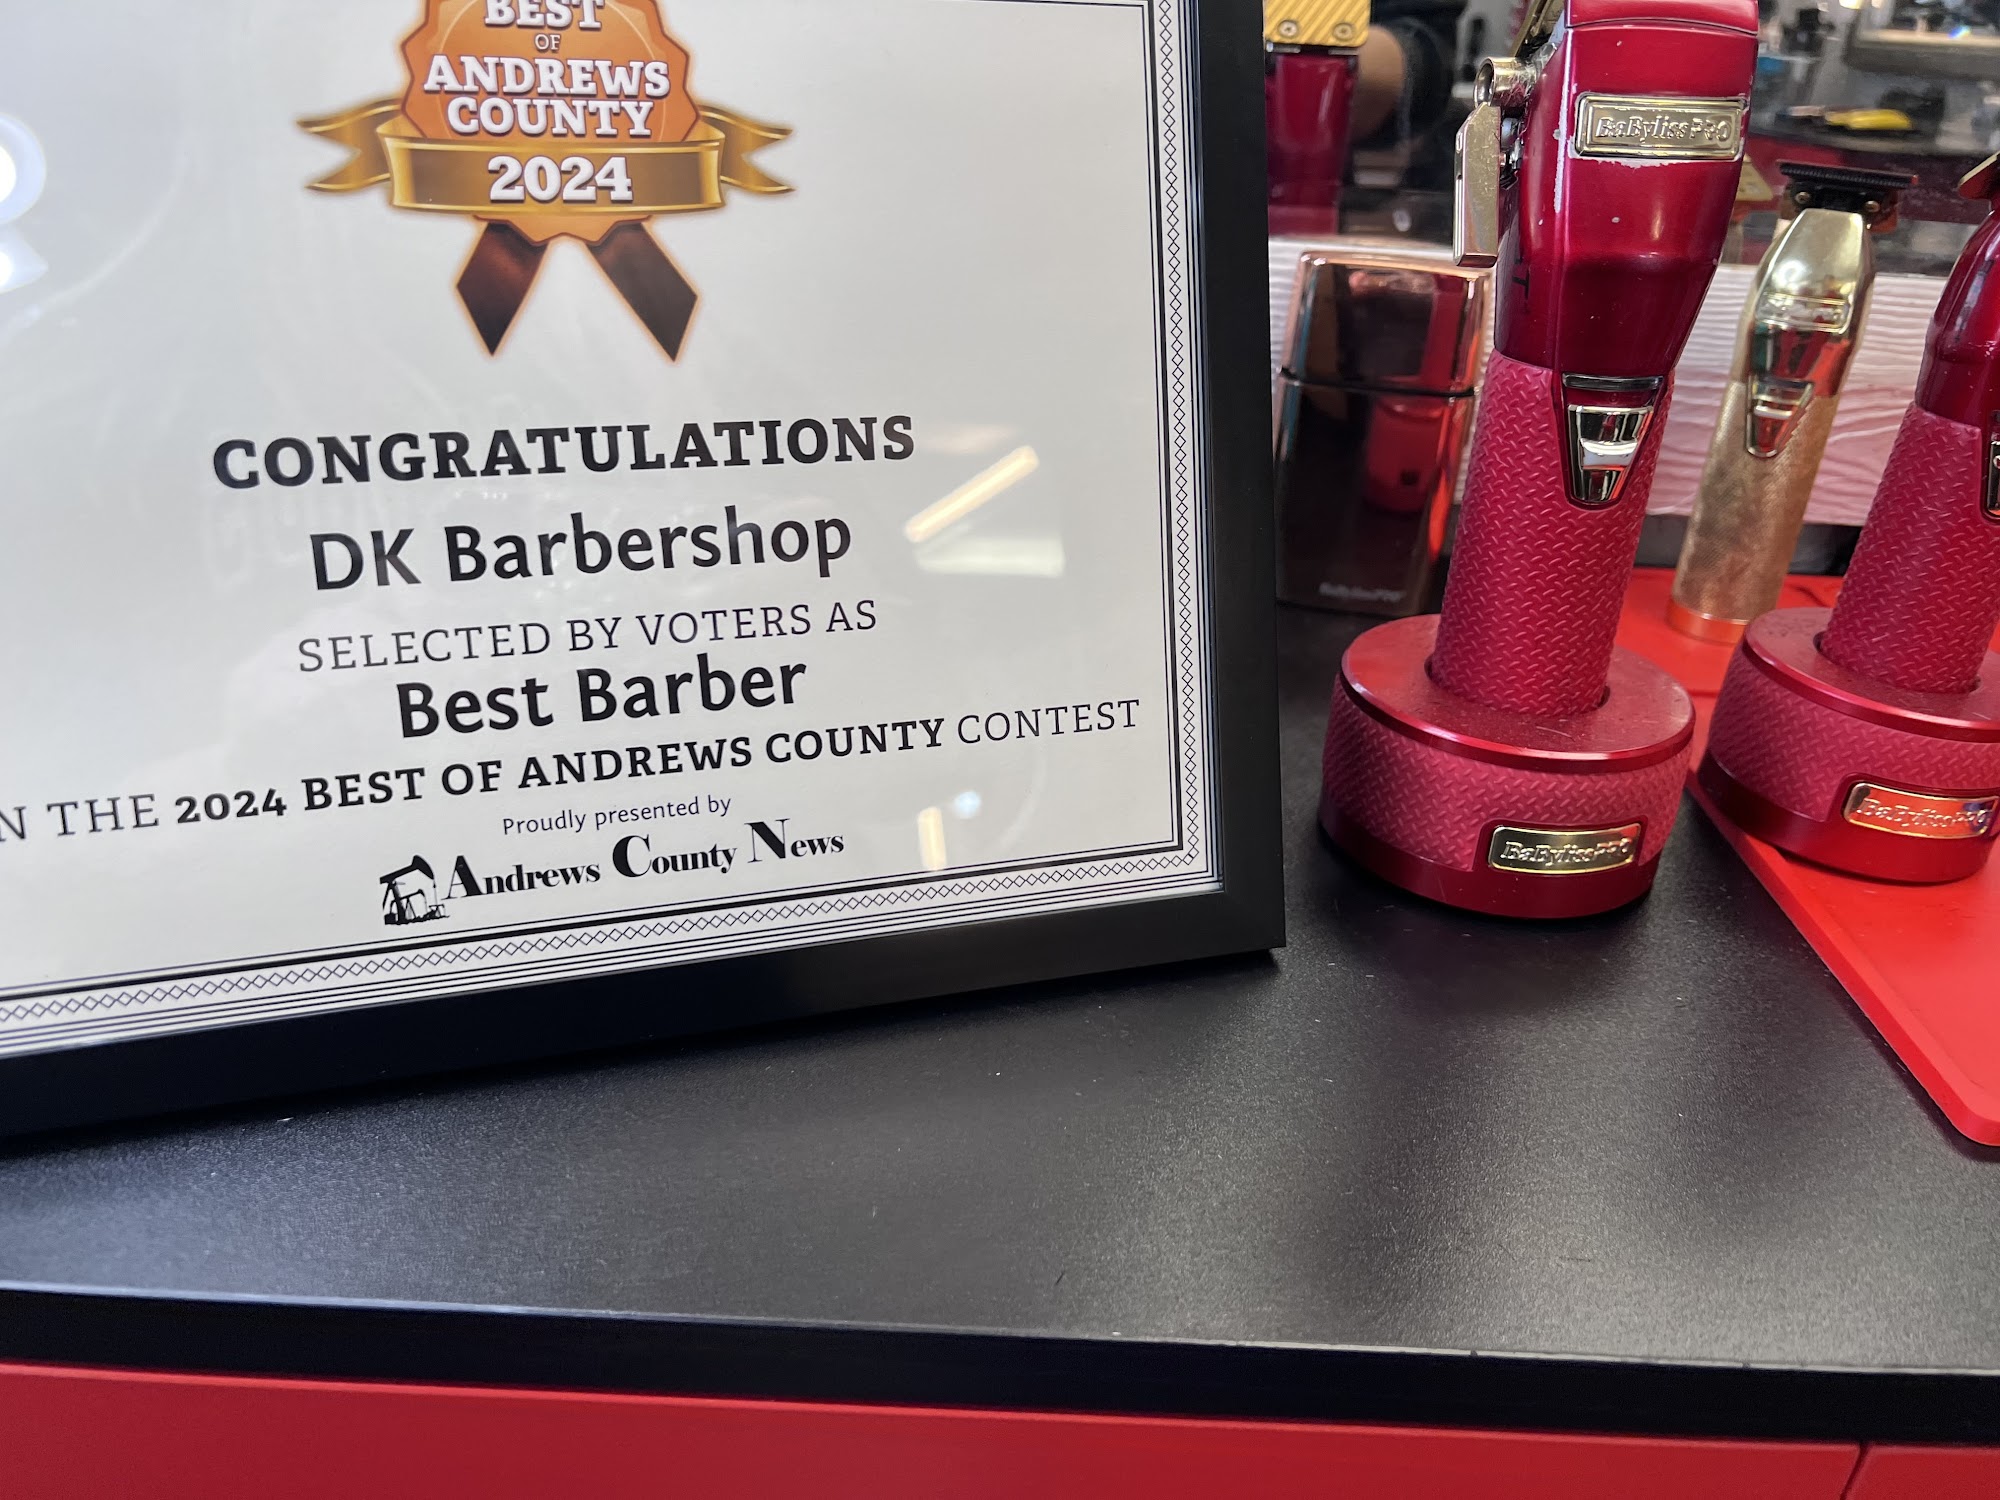 DK Barbershop